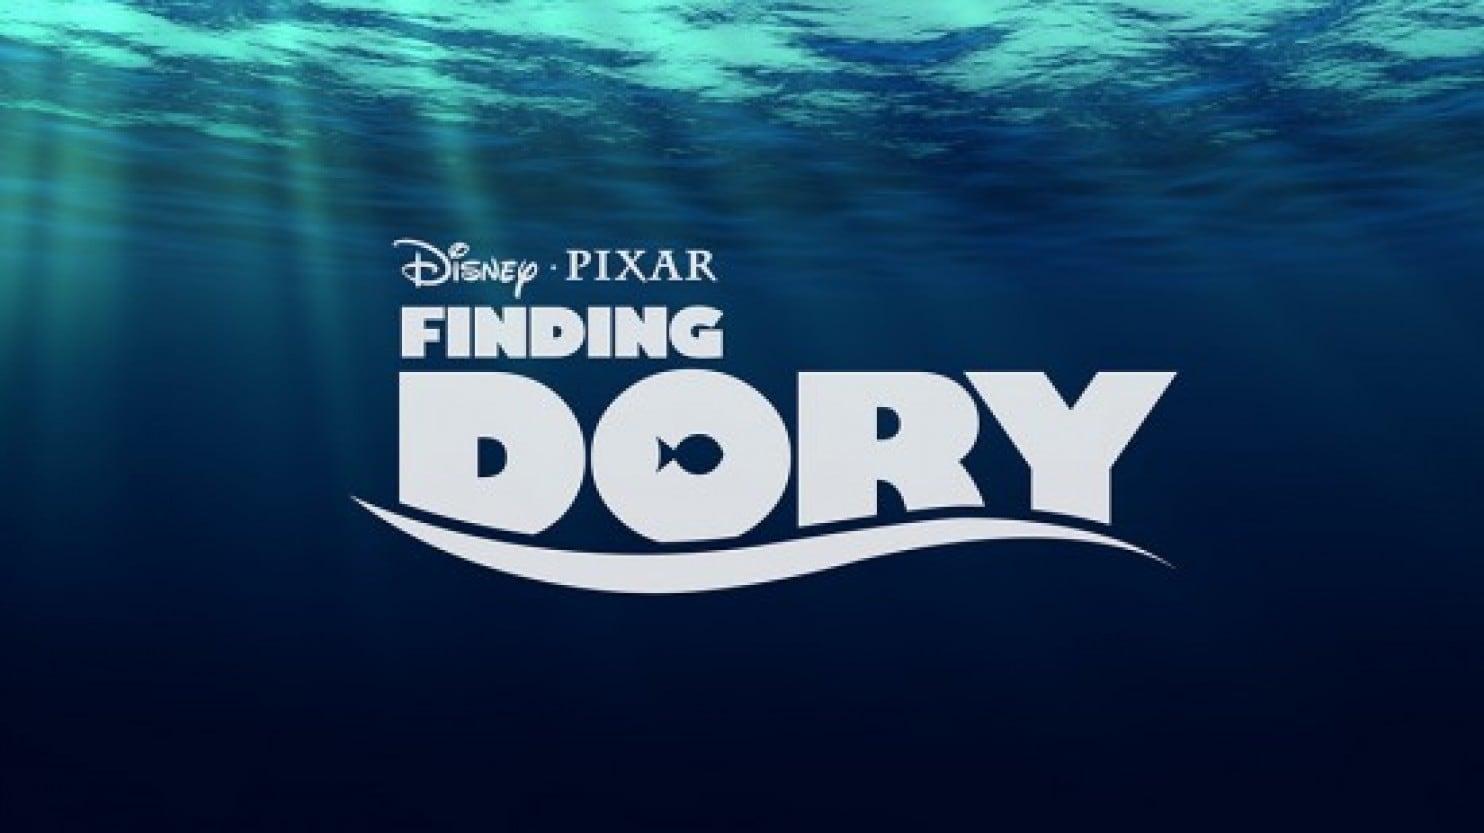 Disney Pixar Finding Nemo Logo - FINDING DORY': Disney/Pixar lands Ellen DeGeneres for 2015 sequel to ...